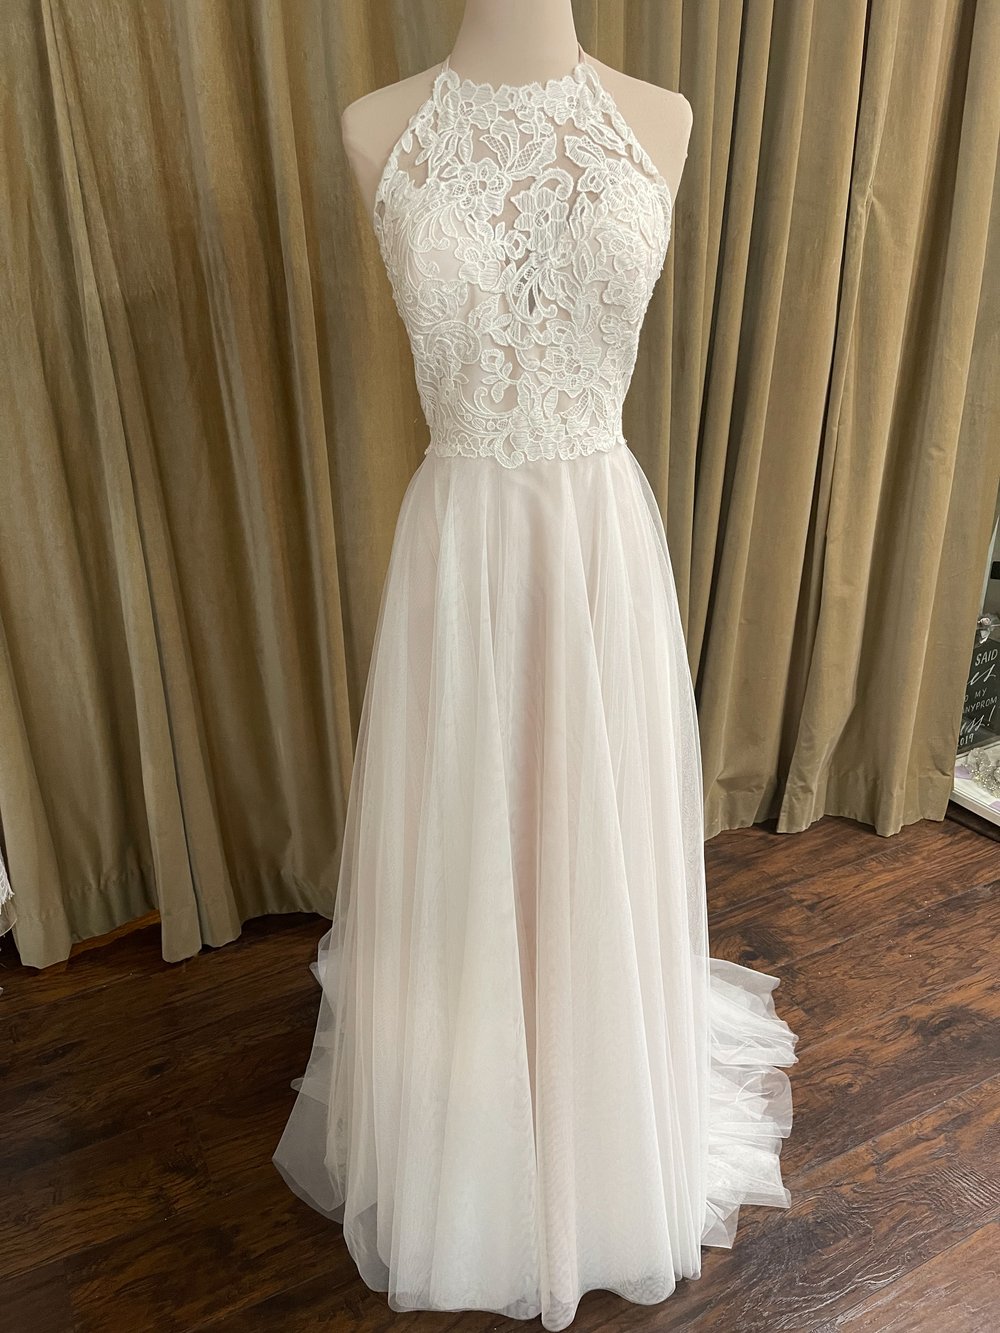 Wedding Dress in Ivory Blush size 12 — Epiphany Boutique